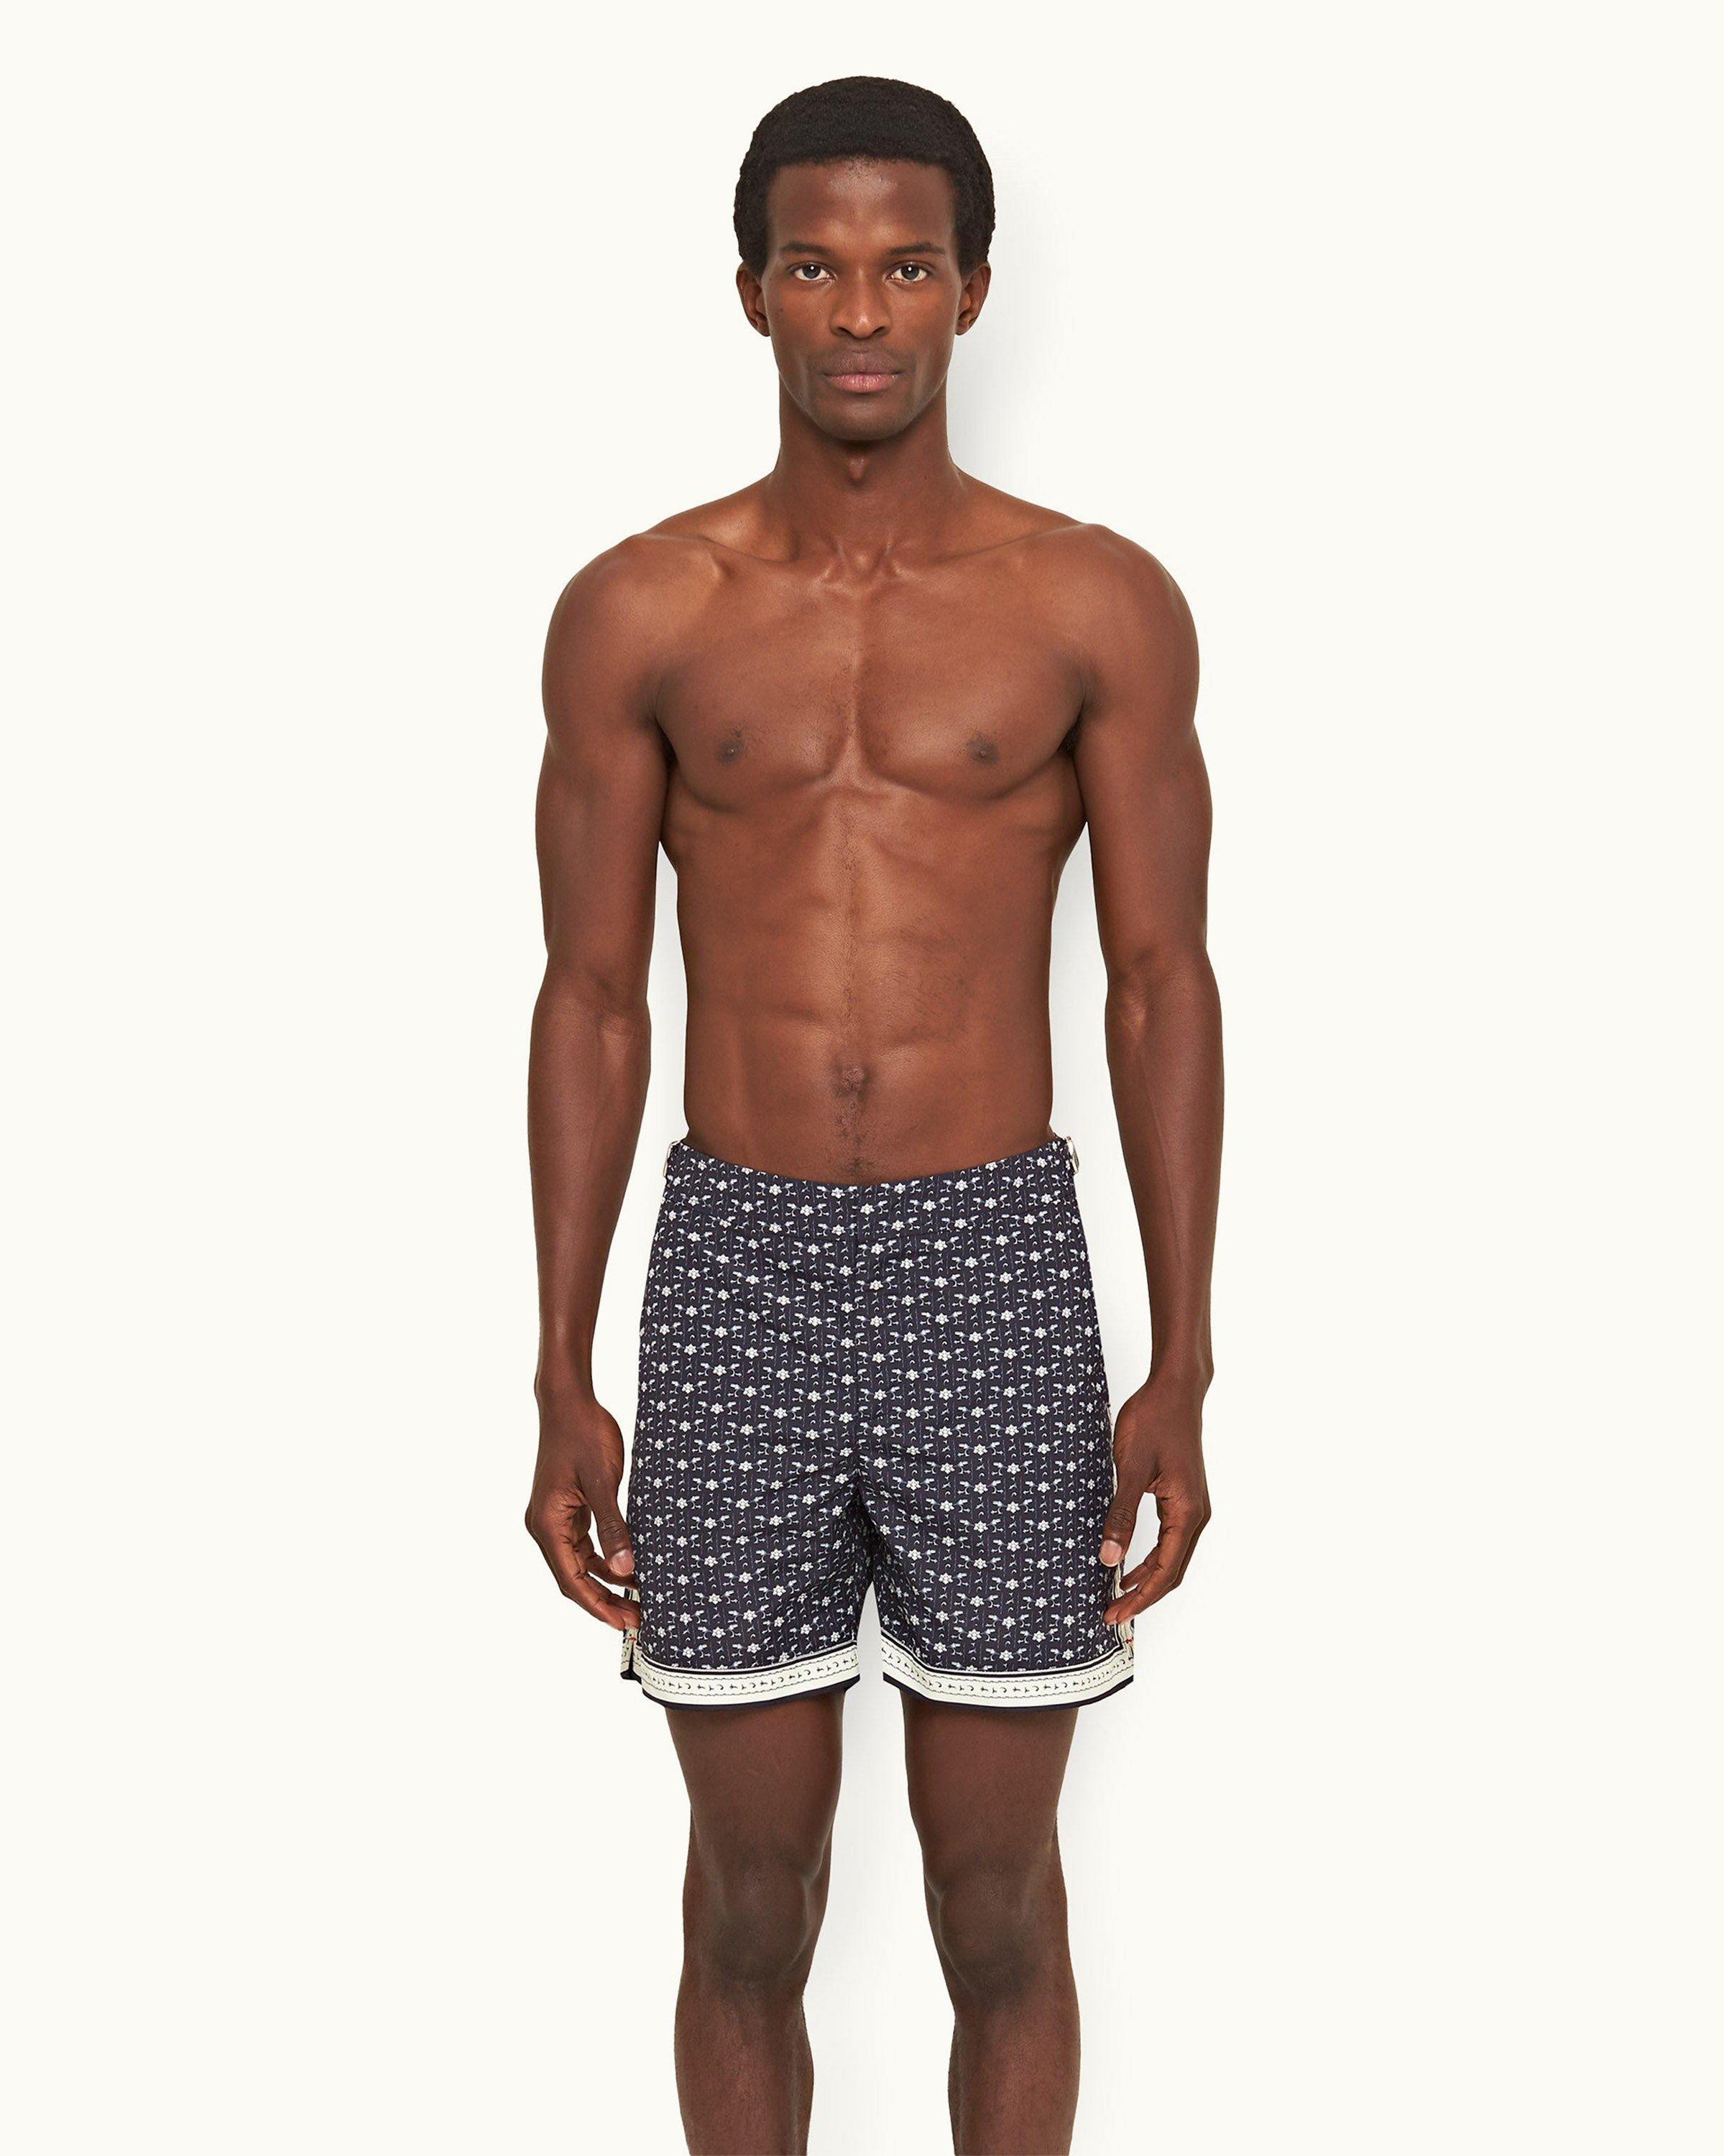 100% Authentic Louis Vuitton Trunks Shorts Vintage Swim Size M